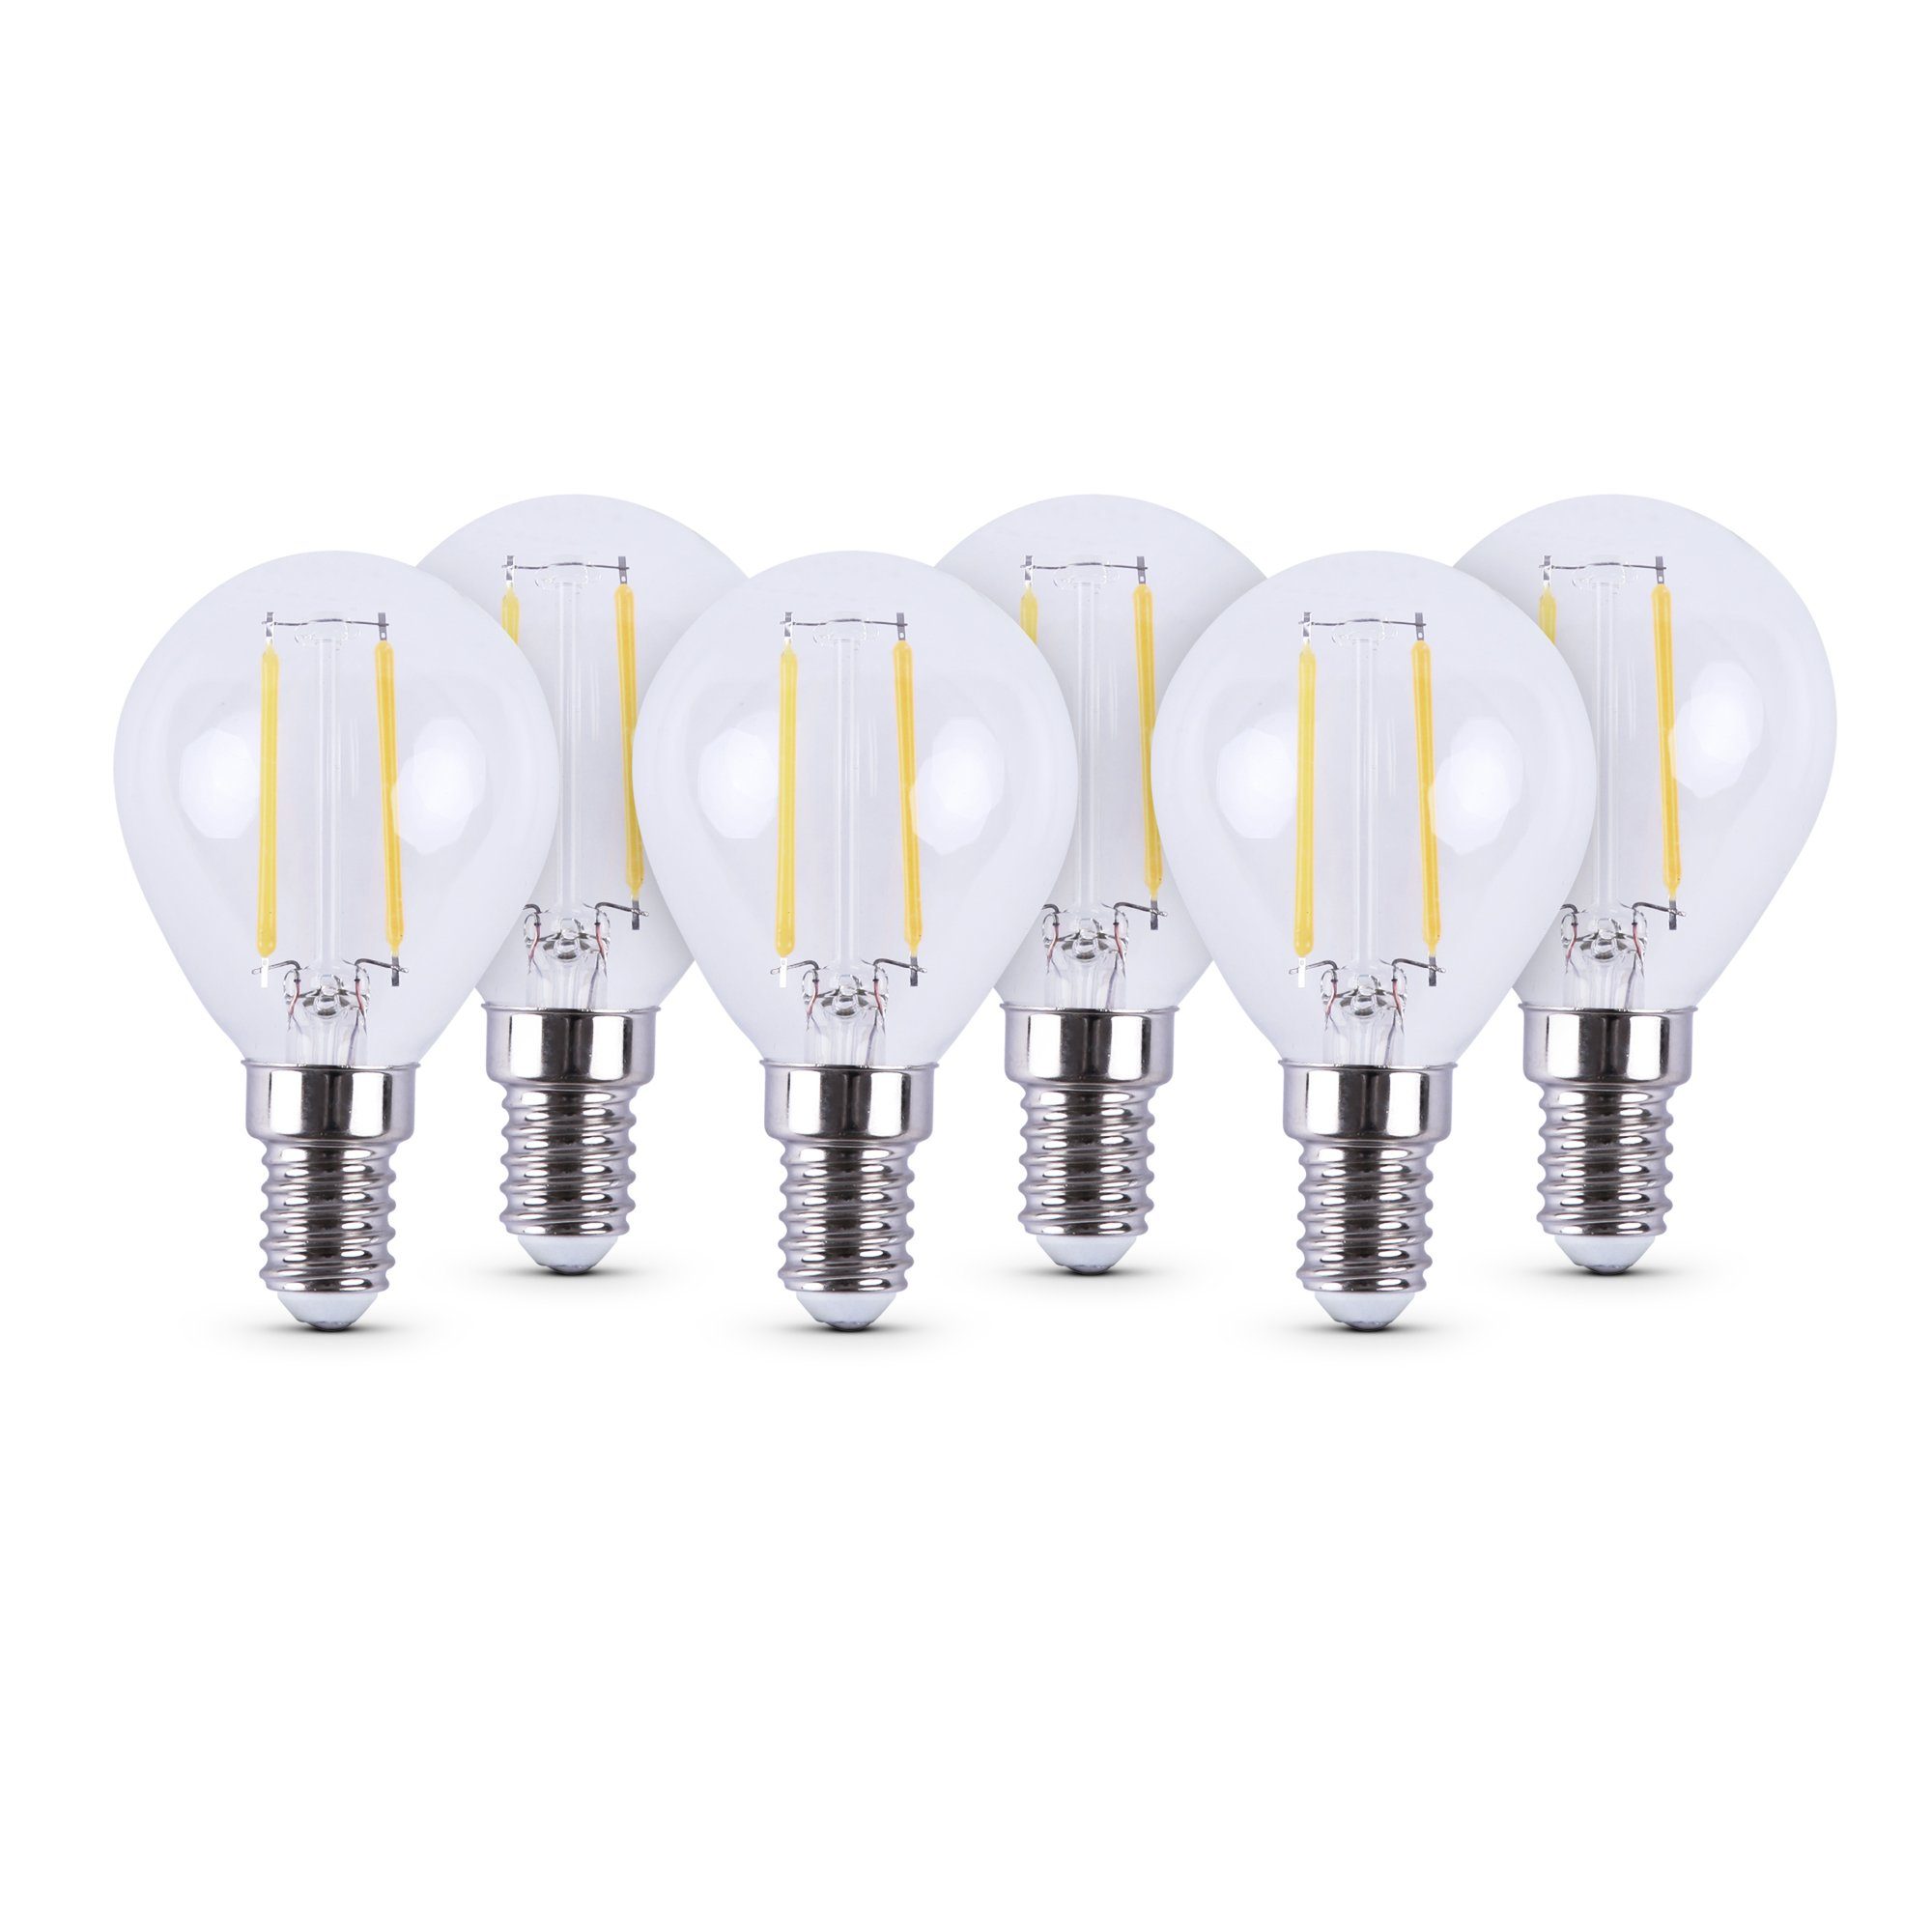 Bestlivings LED-Leuchtmittel 77202 Glühbirne, E14, 6 St., Warmweiß, Retrolicht Glühlampe LED-Birne 2700K Warmweiß